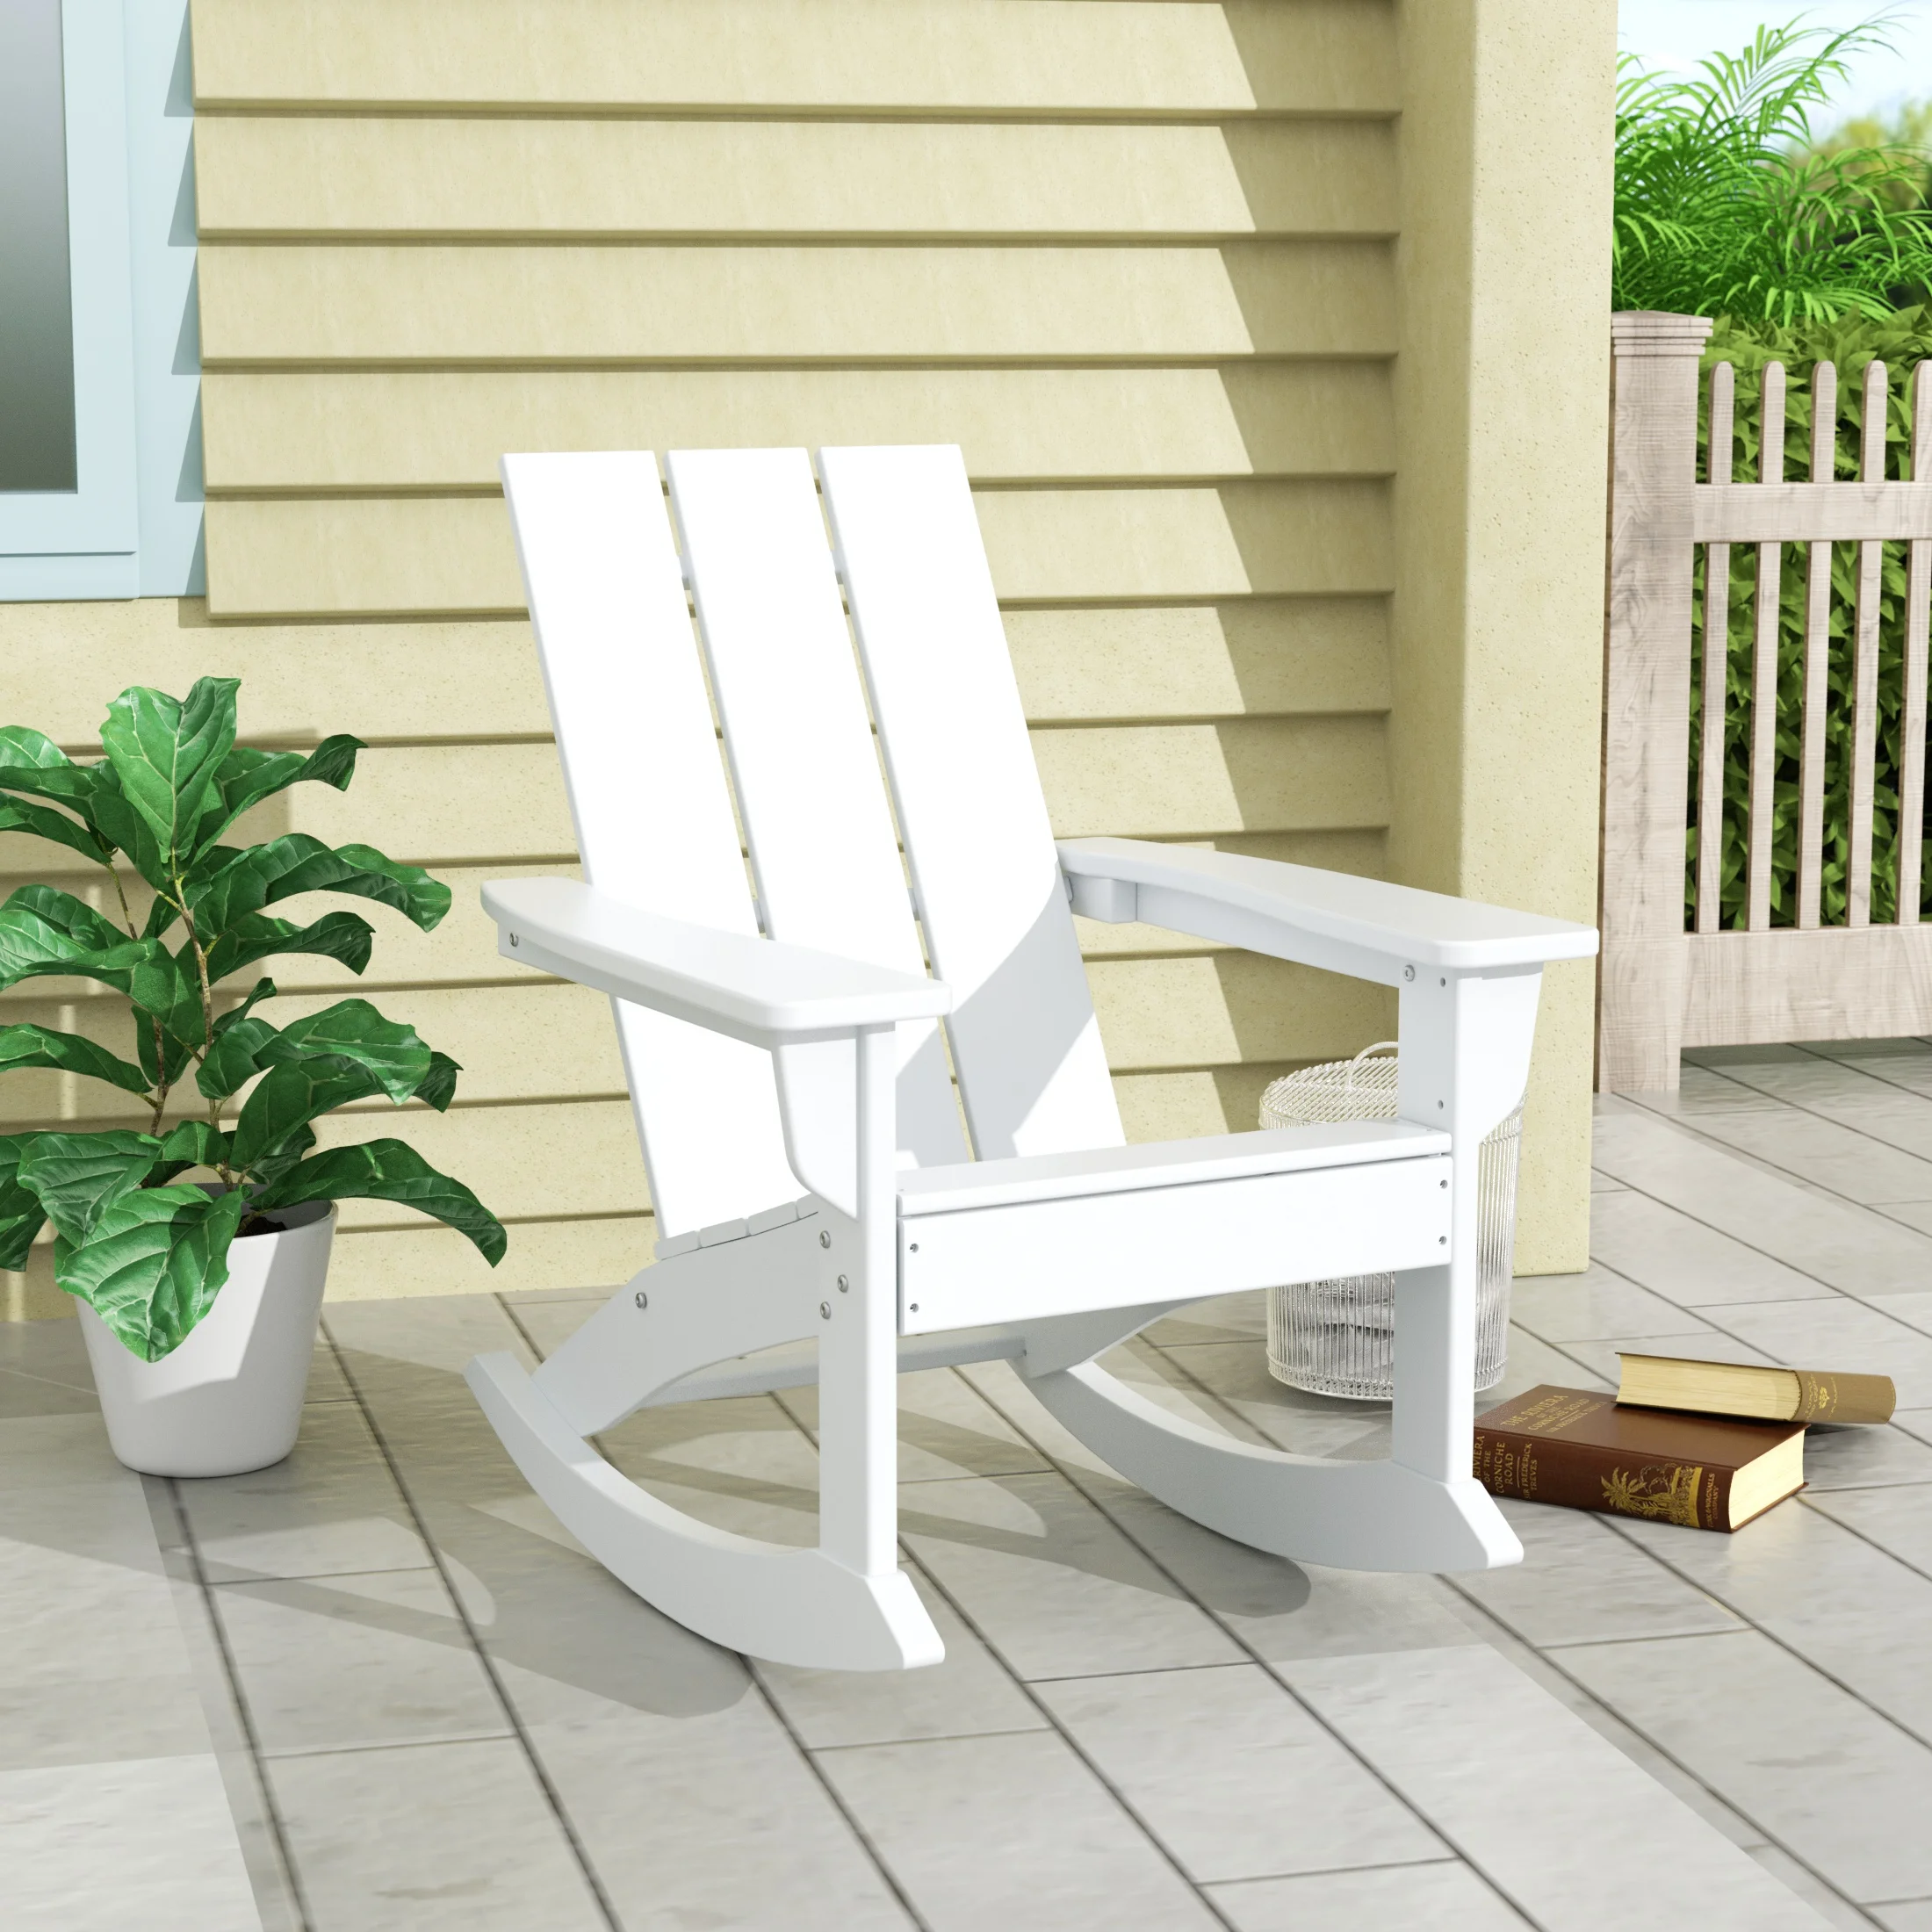 

Кресло-качалка для сада досуга, современное пластиковое уличное кресло-качалка для патио, крыльца